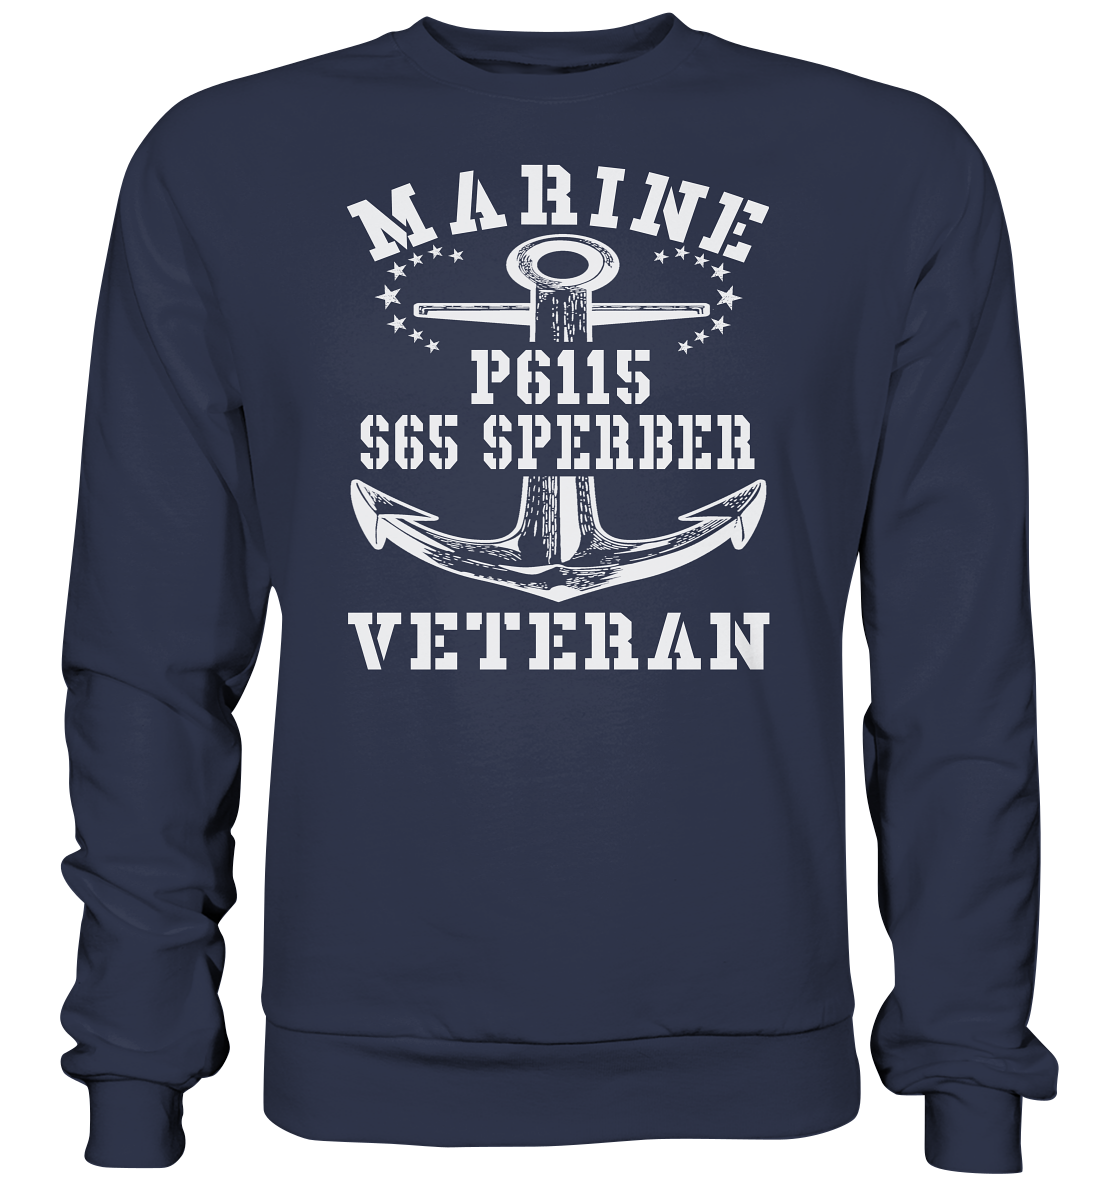 FK-Schnellboot P6115 SPERBER Marine Veteran - Premium Sweatshirt